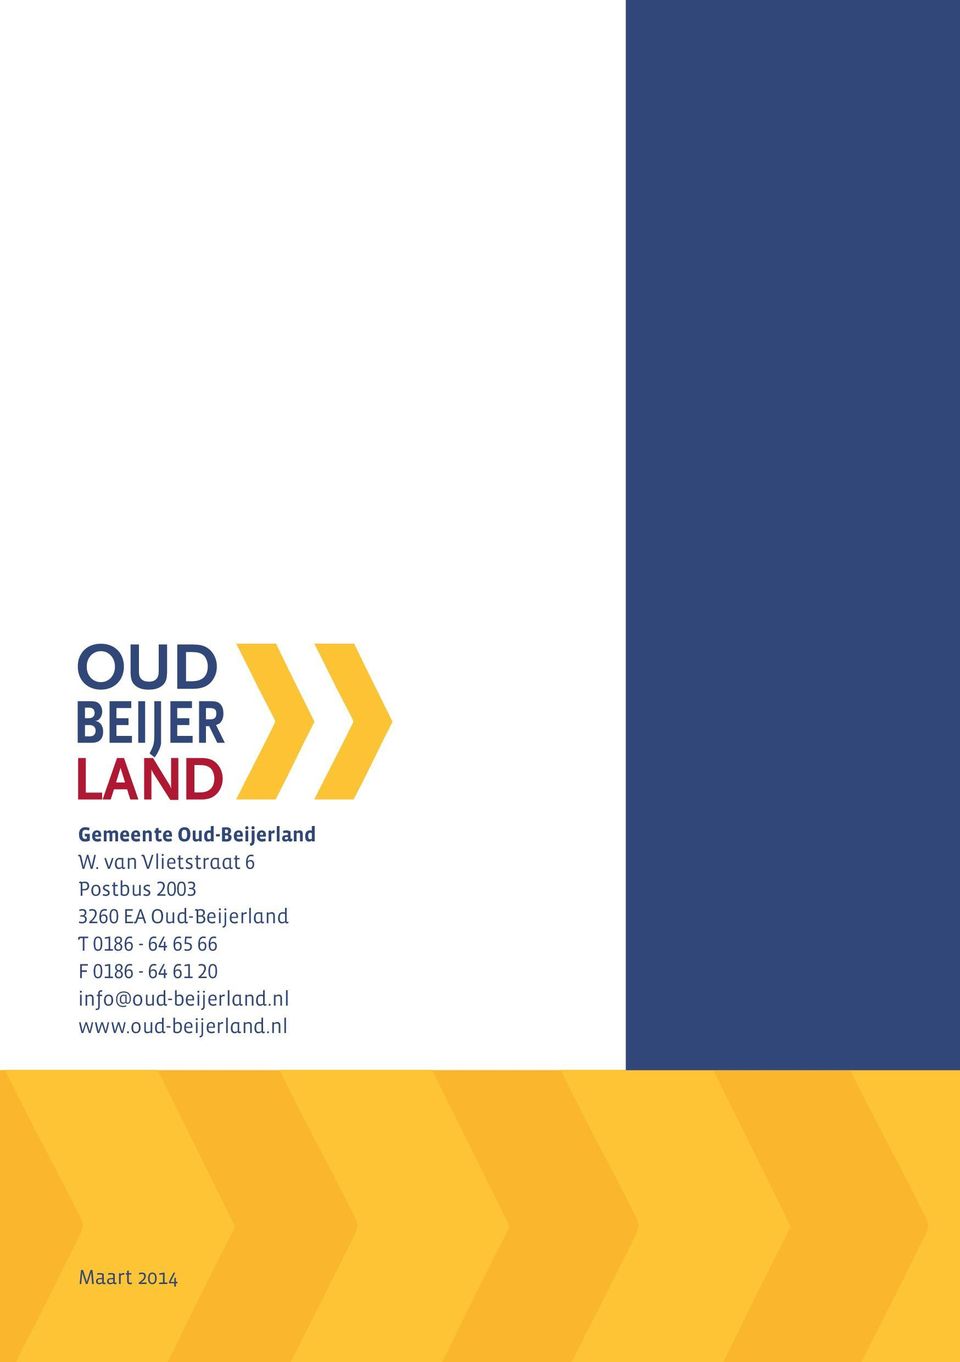 Oud-Beijerland T 0186-64 65 66 F 0186-64